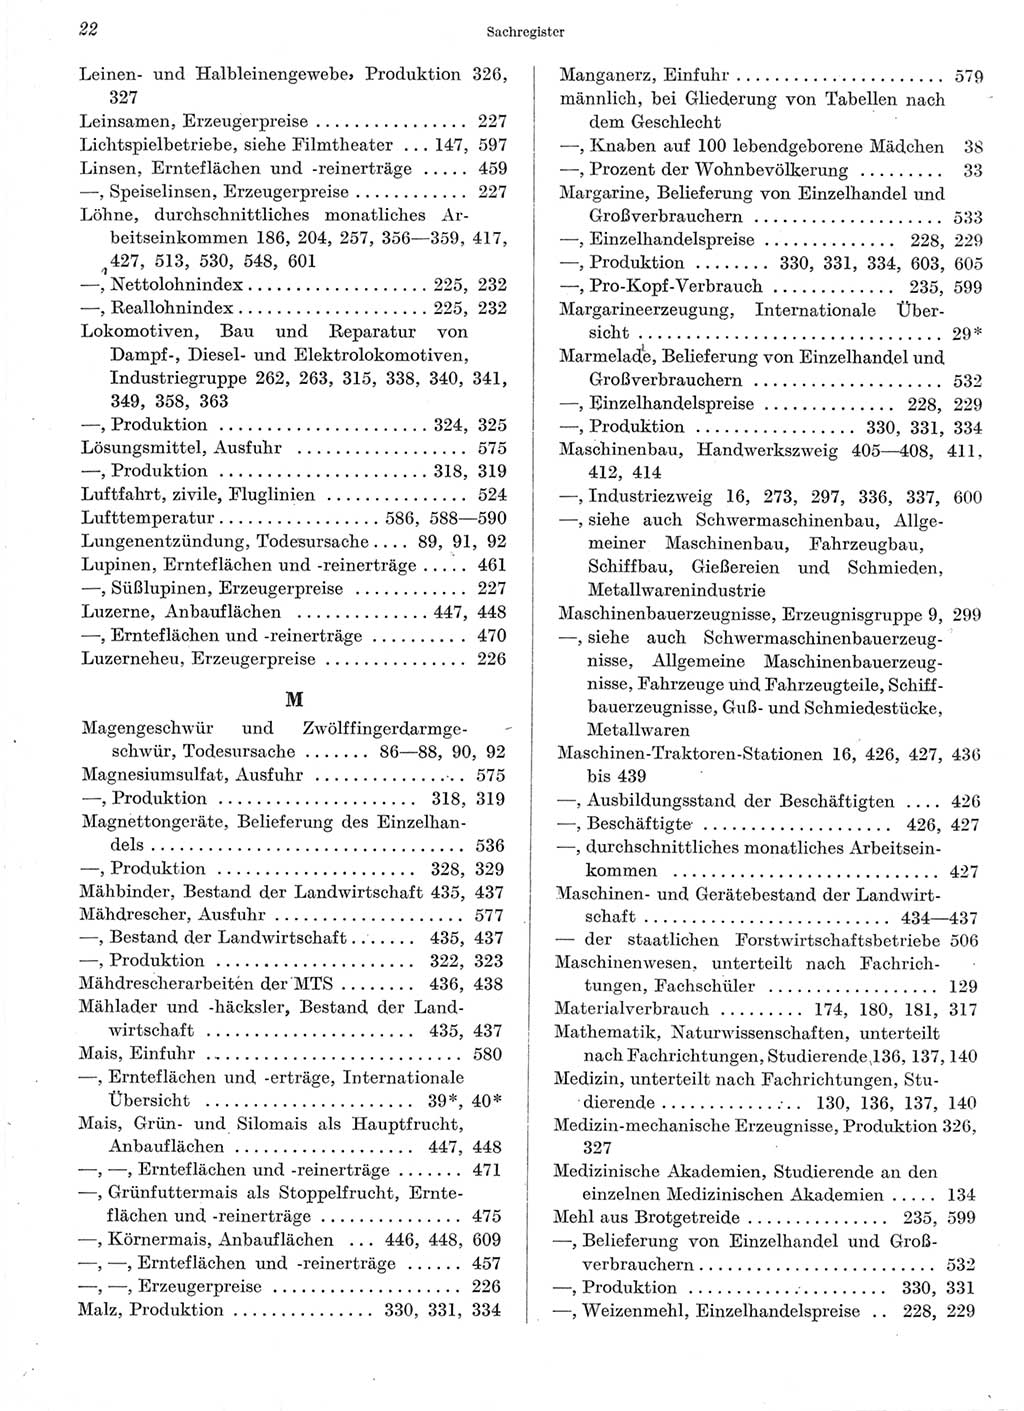 Statistisches Jahrbuch der Deutschen Demokratischen Republik (DDR) 1960-1961, Seite 22 (Stat. Jb. DDR 1960-1961, S. 22)